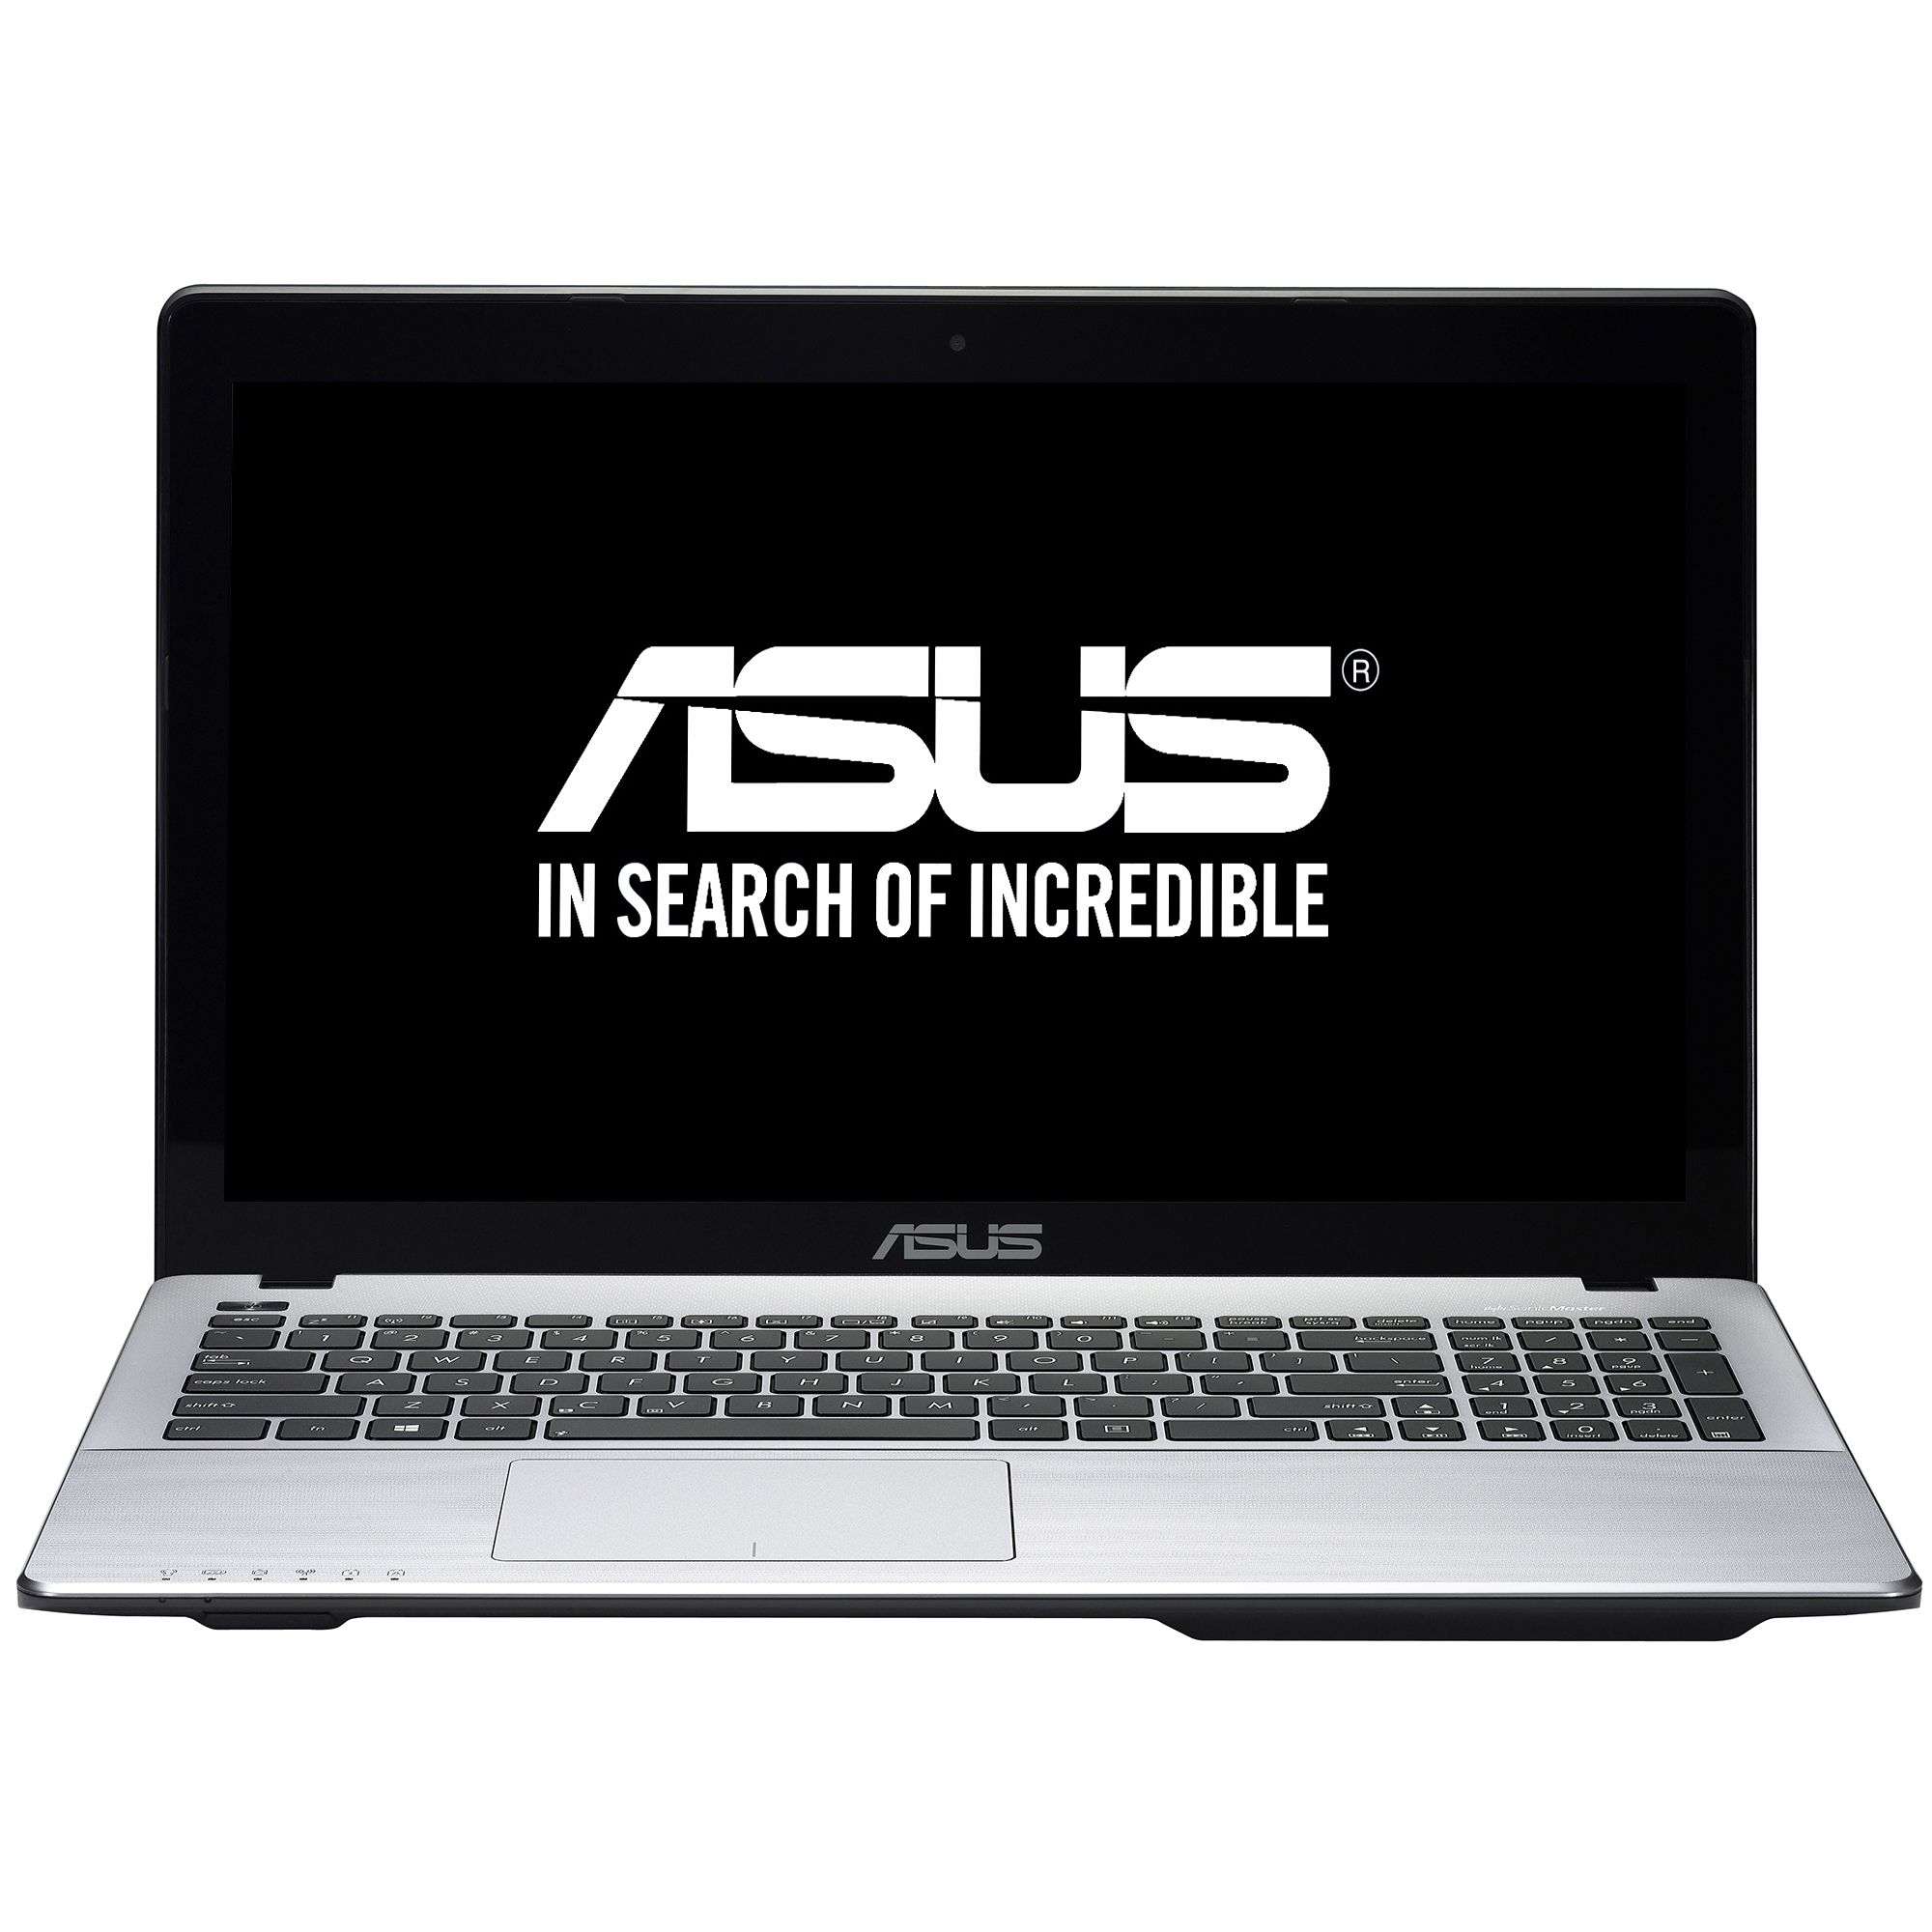  Laptop Asus F550JX-DM169D, Intel Core i7-4720HQ, 8GB DDR3, HDD 1TB, nVidia GeForce GTX 950M 4GB, Free DOS 